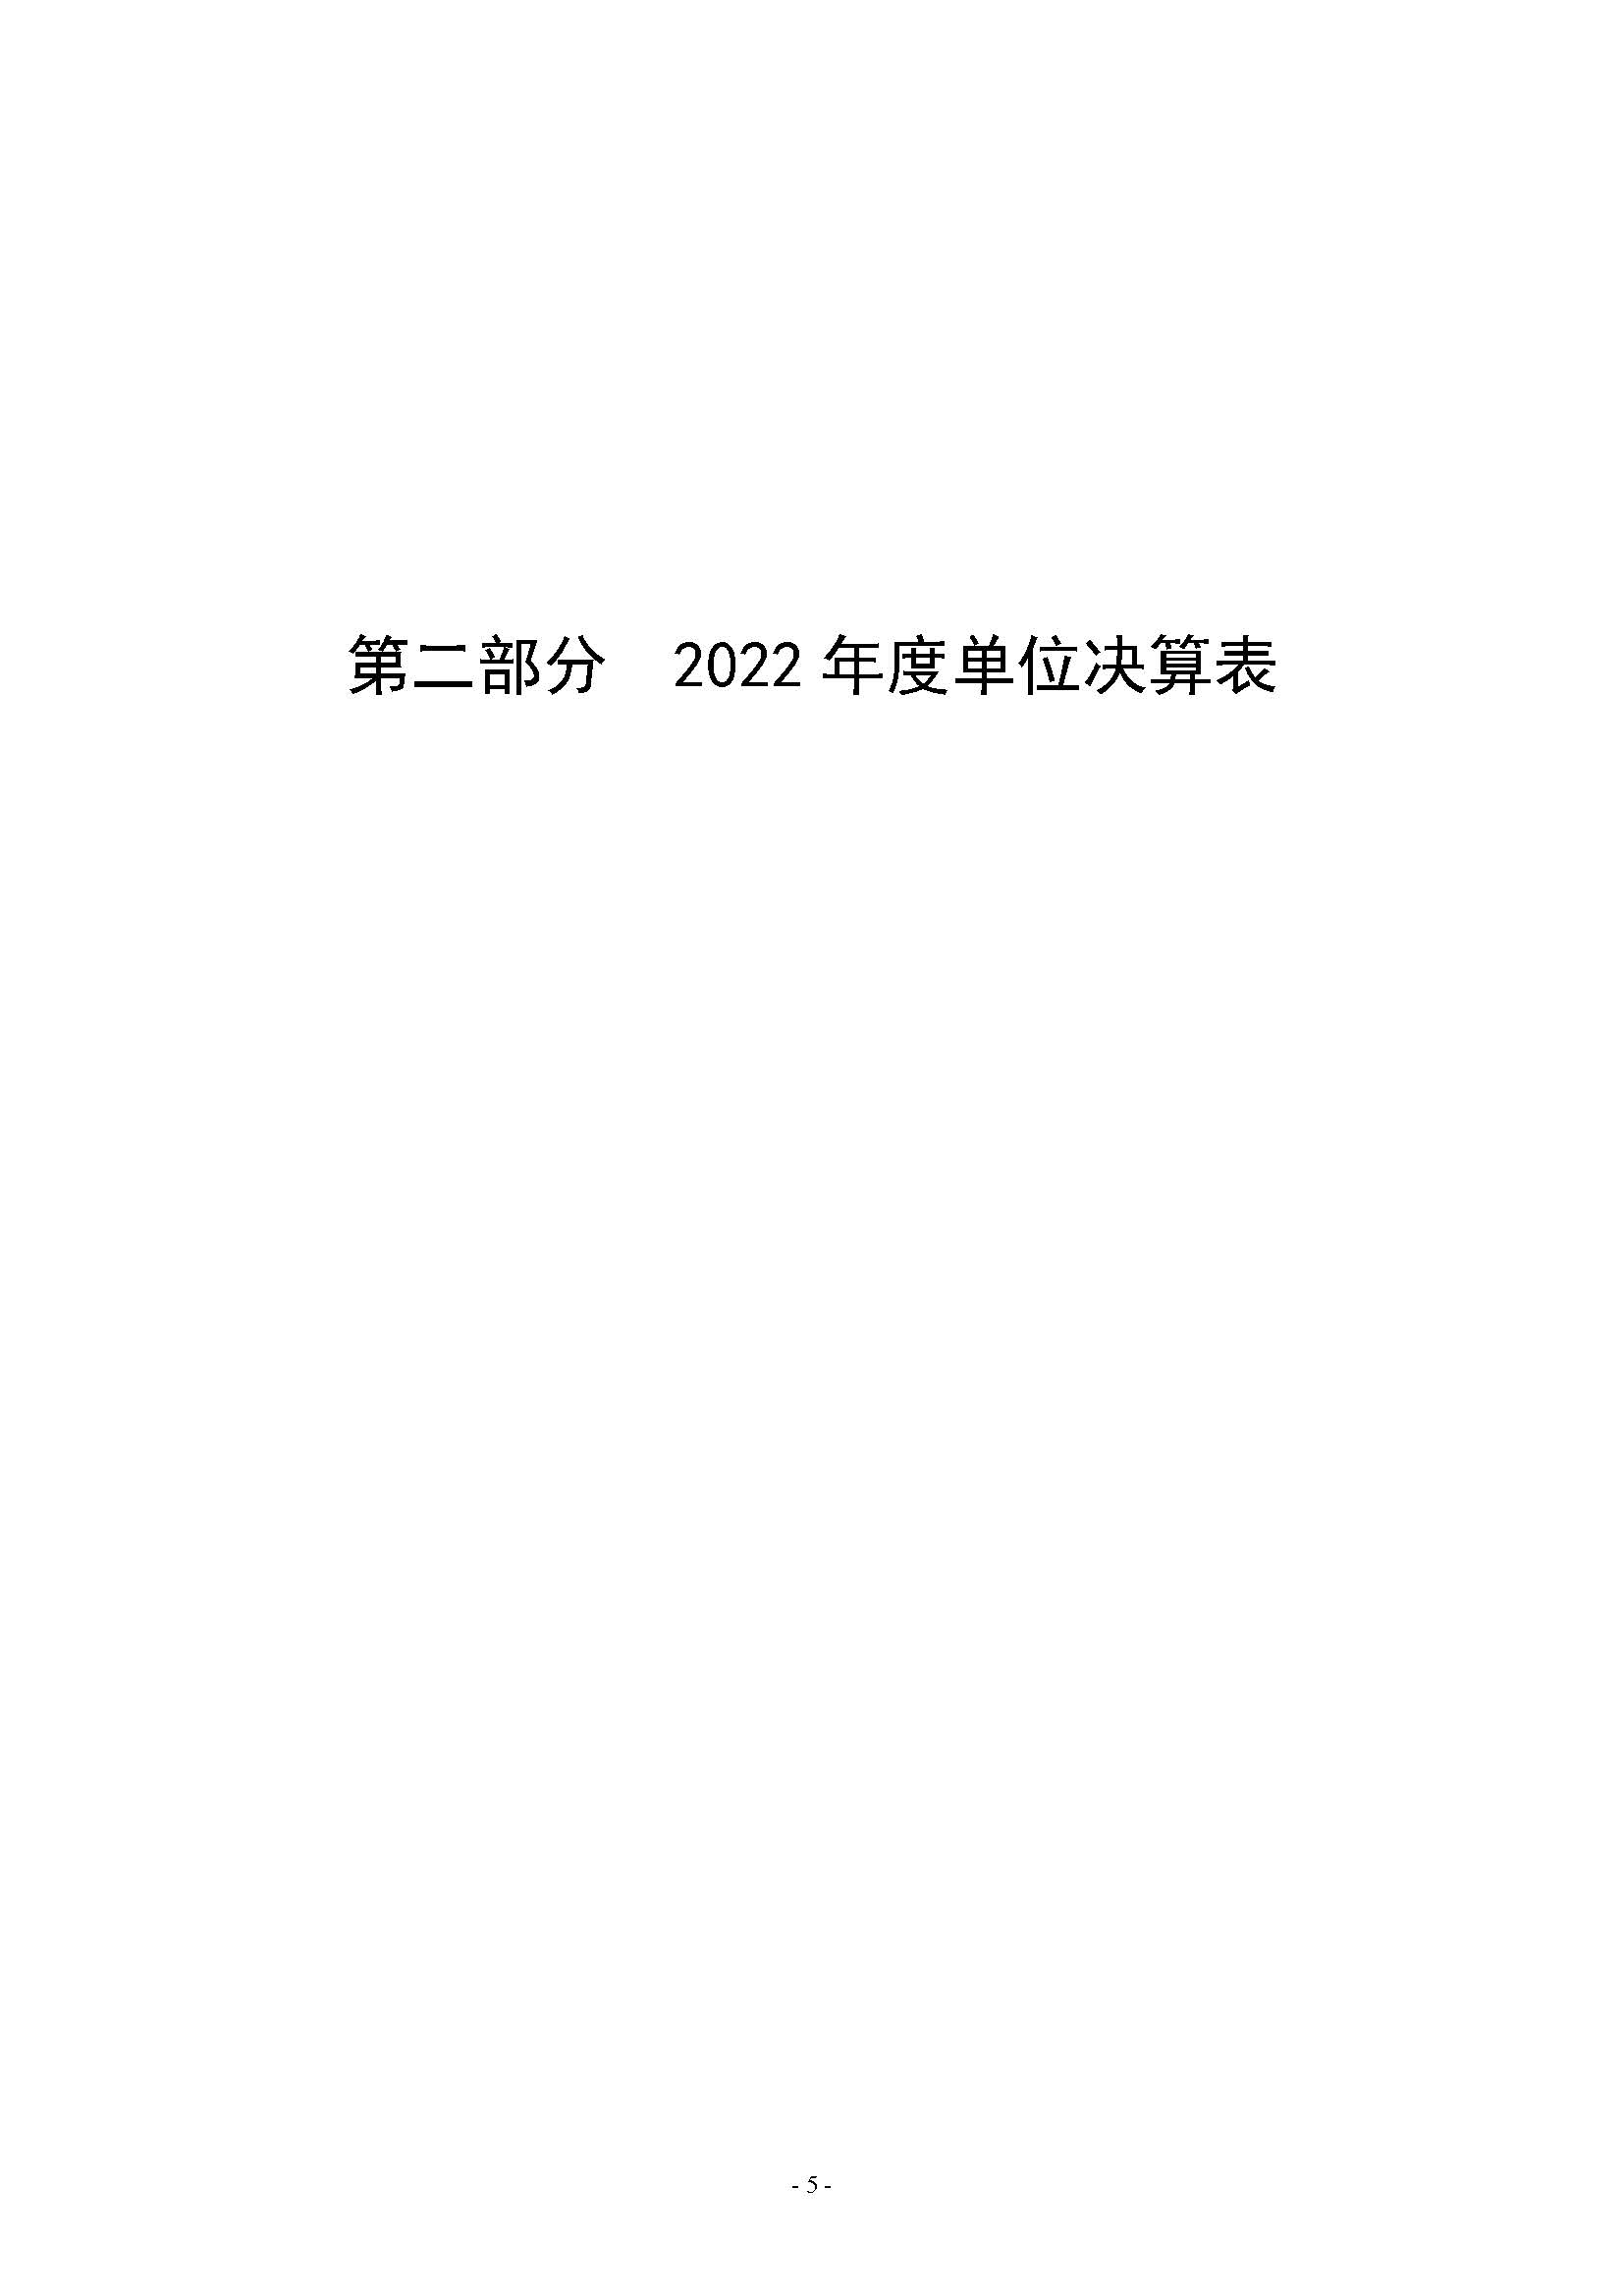 2022年度郑州市第四十一高级中学决算_页面_05.jpg